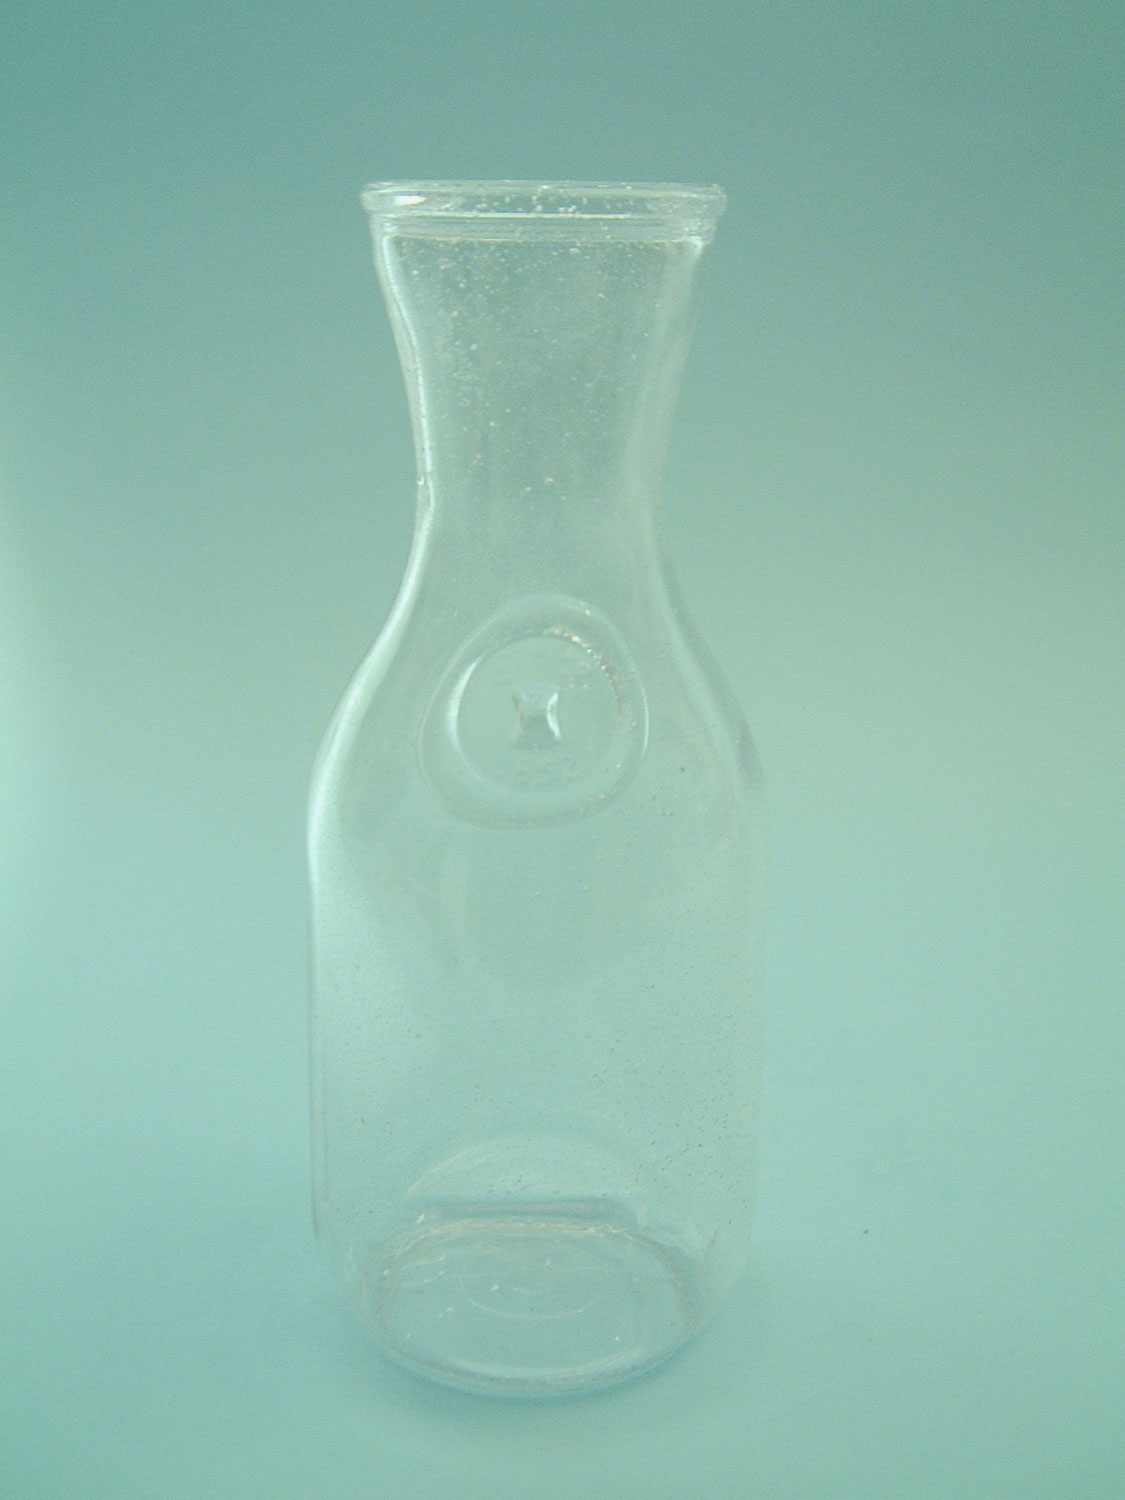 Film / video sugar glass. California carafe 1 liter, size: 24.5 x ø 10 cm.